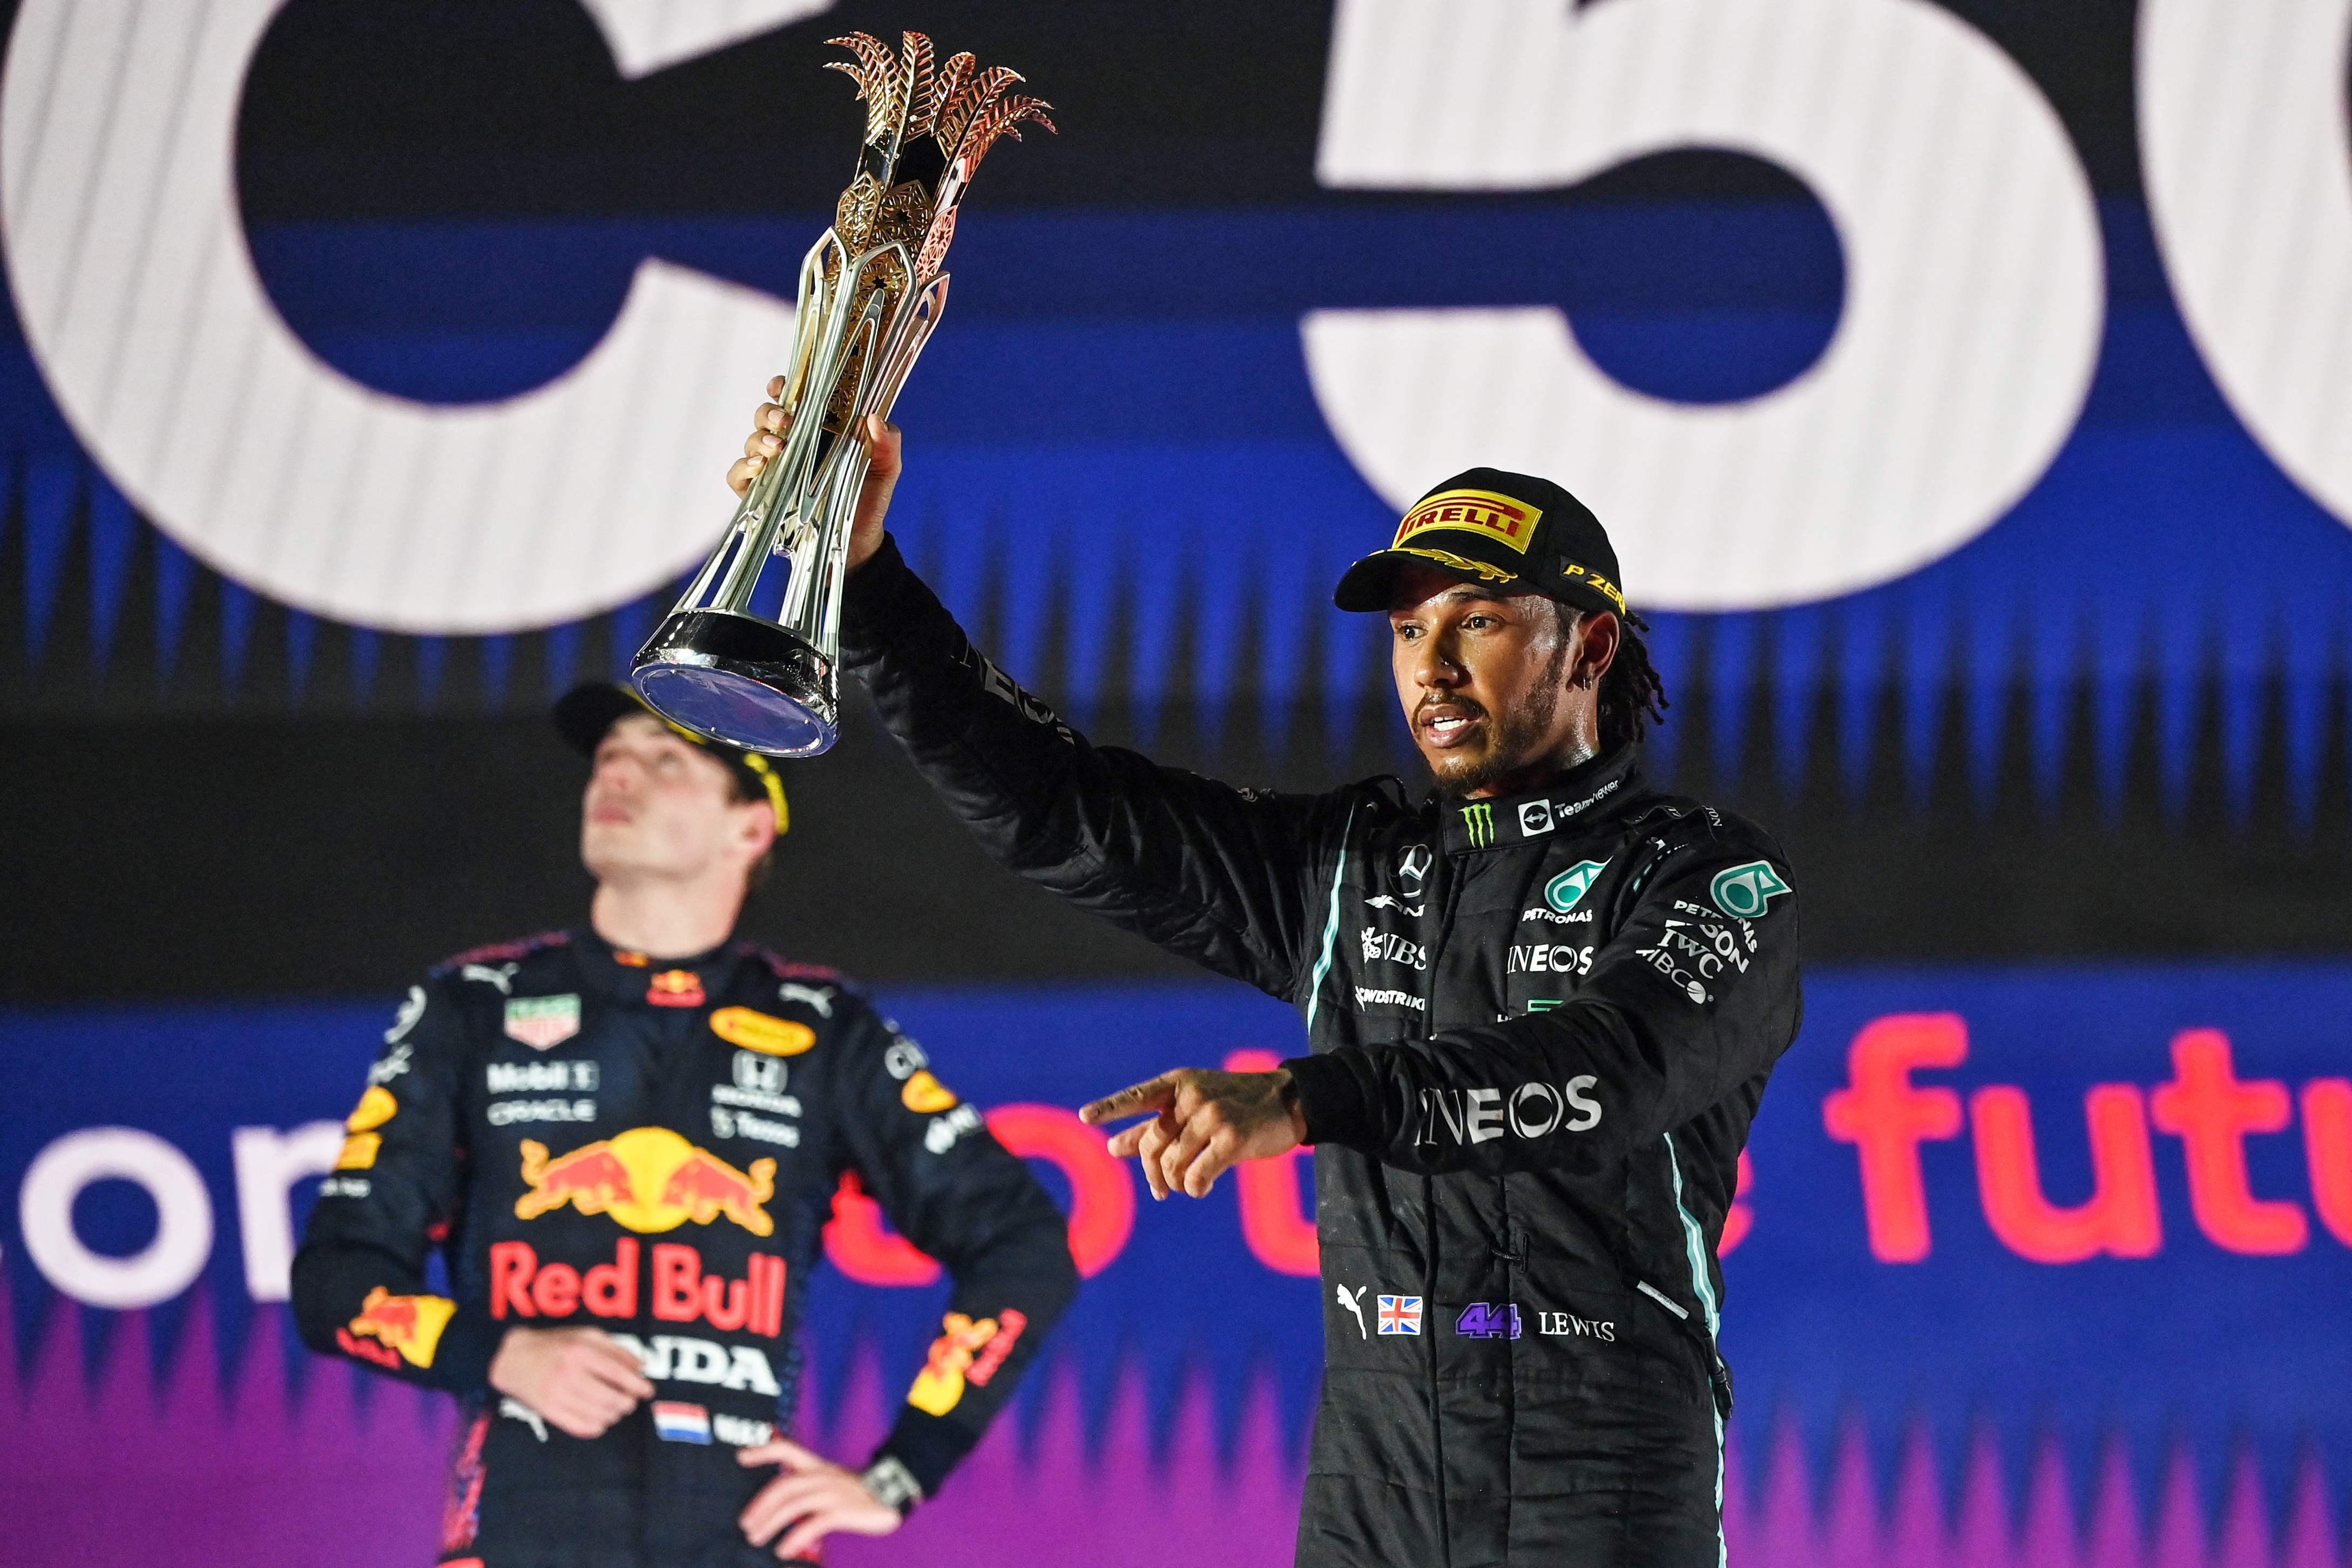 Formula 1de şampiyon kim olacak Hamilton mı, Verstappen mi Son yarış (Abu Dhabi Grand Prix) ne zaman